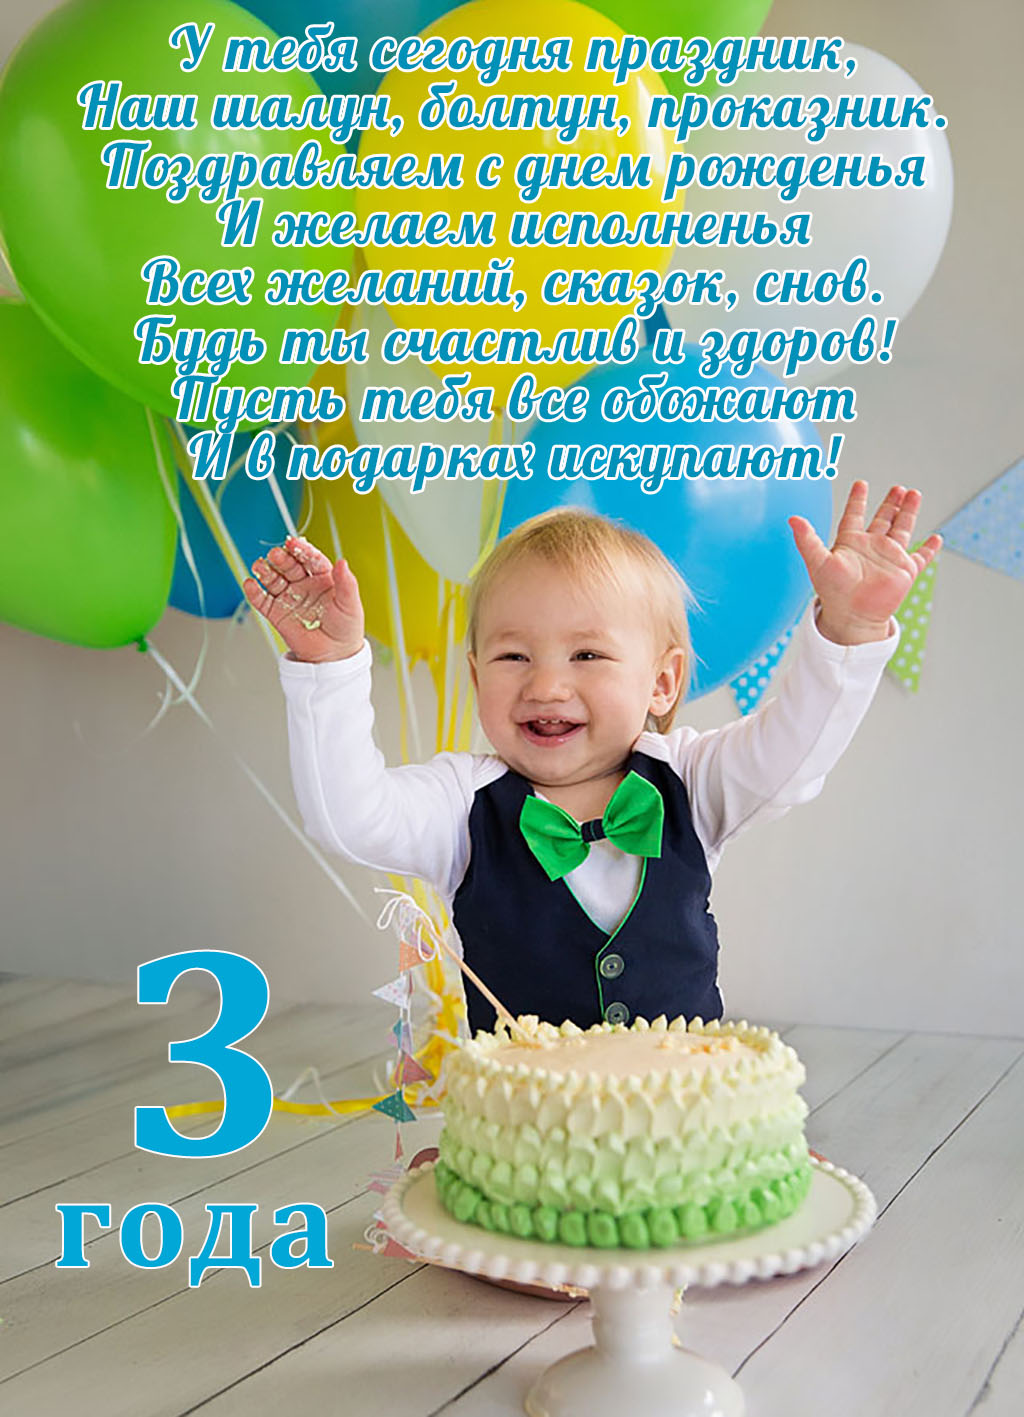 поздравление на день рождения мальчику 3 года